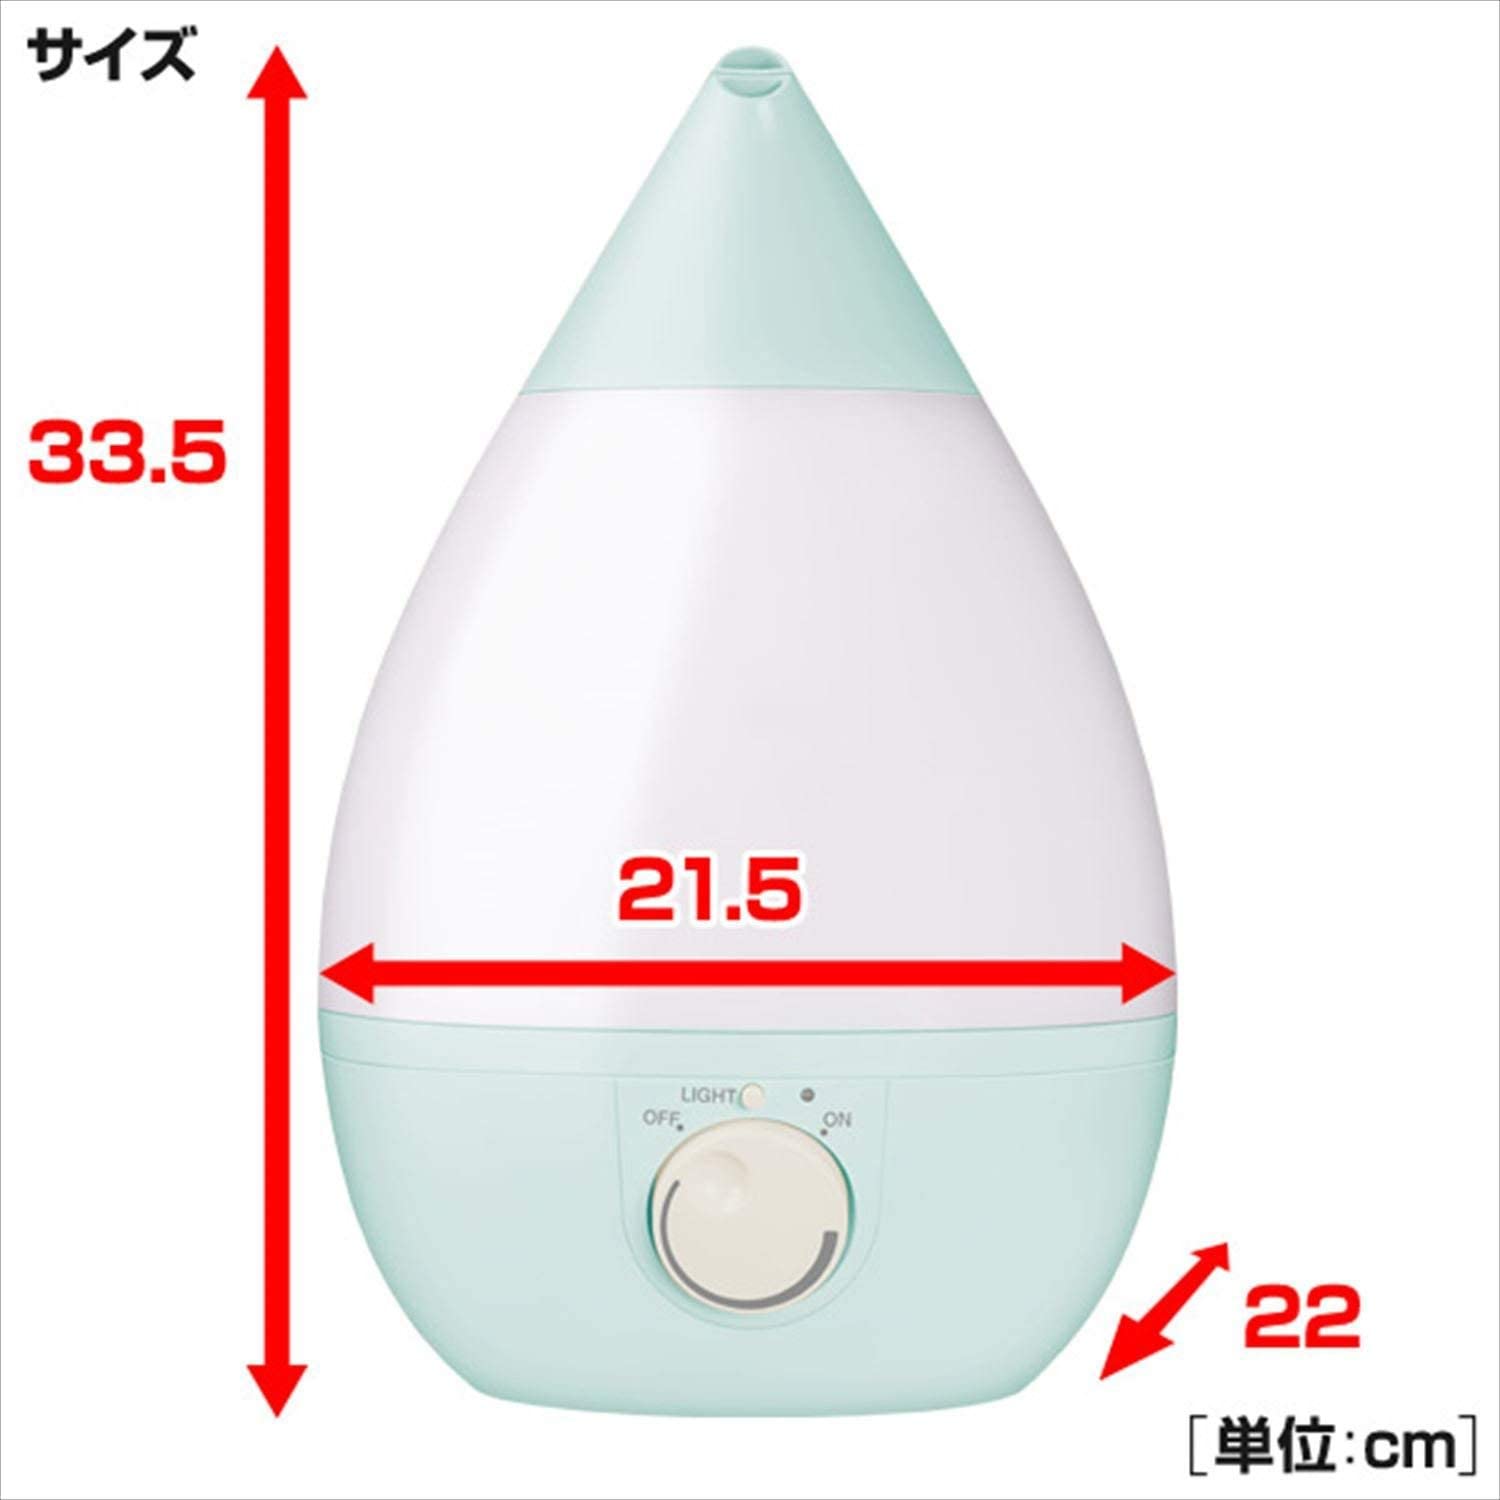 山善(YAMAZEN) 超音波式加湿器 MZ-F303の商品画像サムネ7 